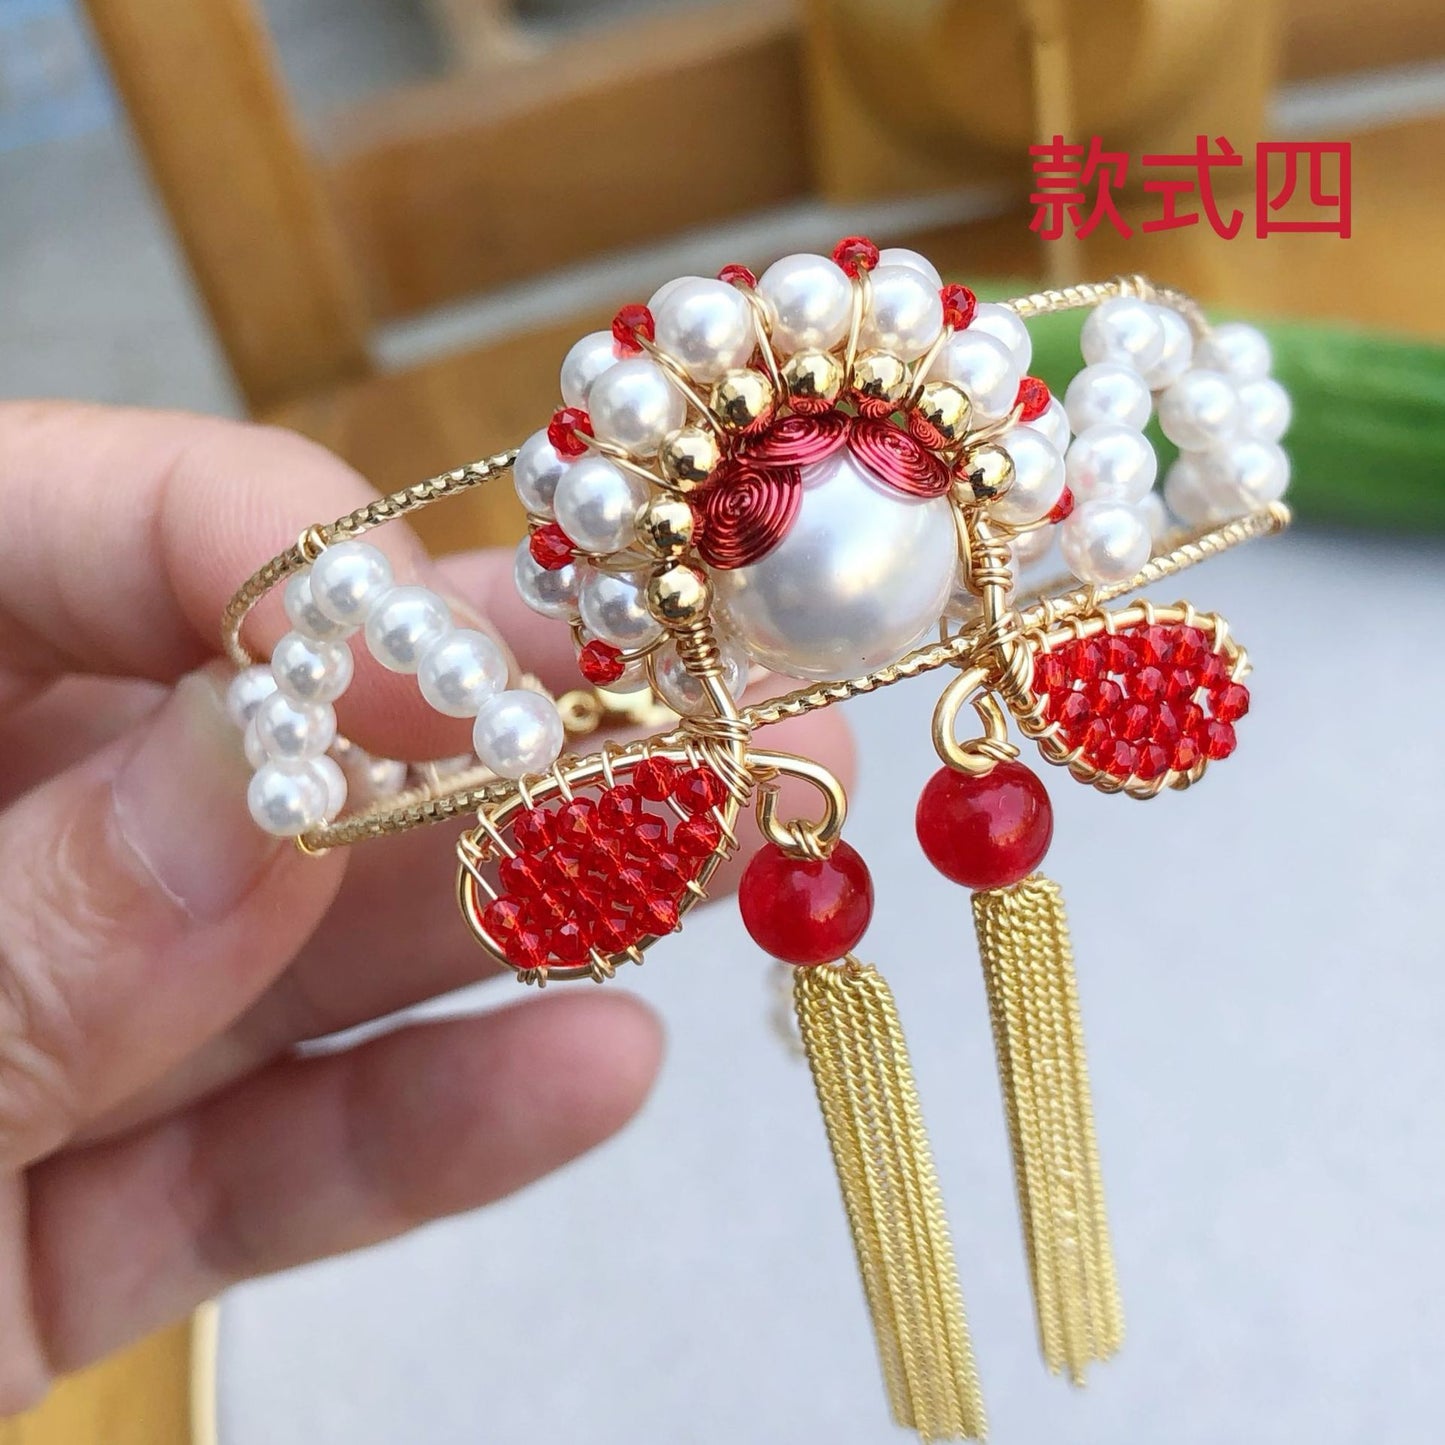 Diseño de pulsera de cultura hecha a mano, accesorios de regalo de cumpleaños personalizados de la Ópera de Pekín